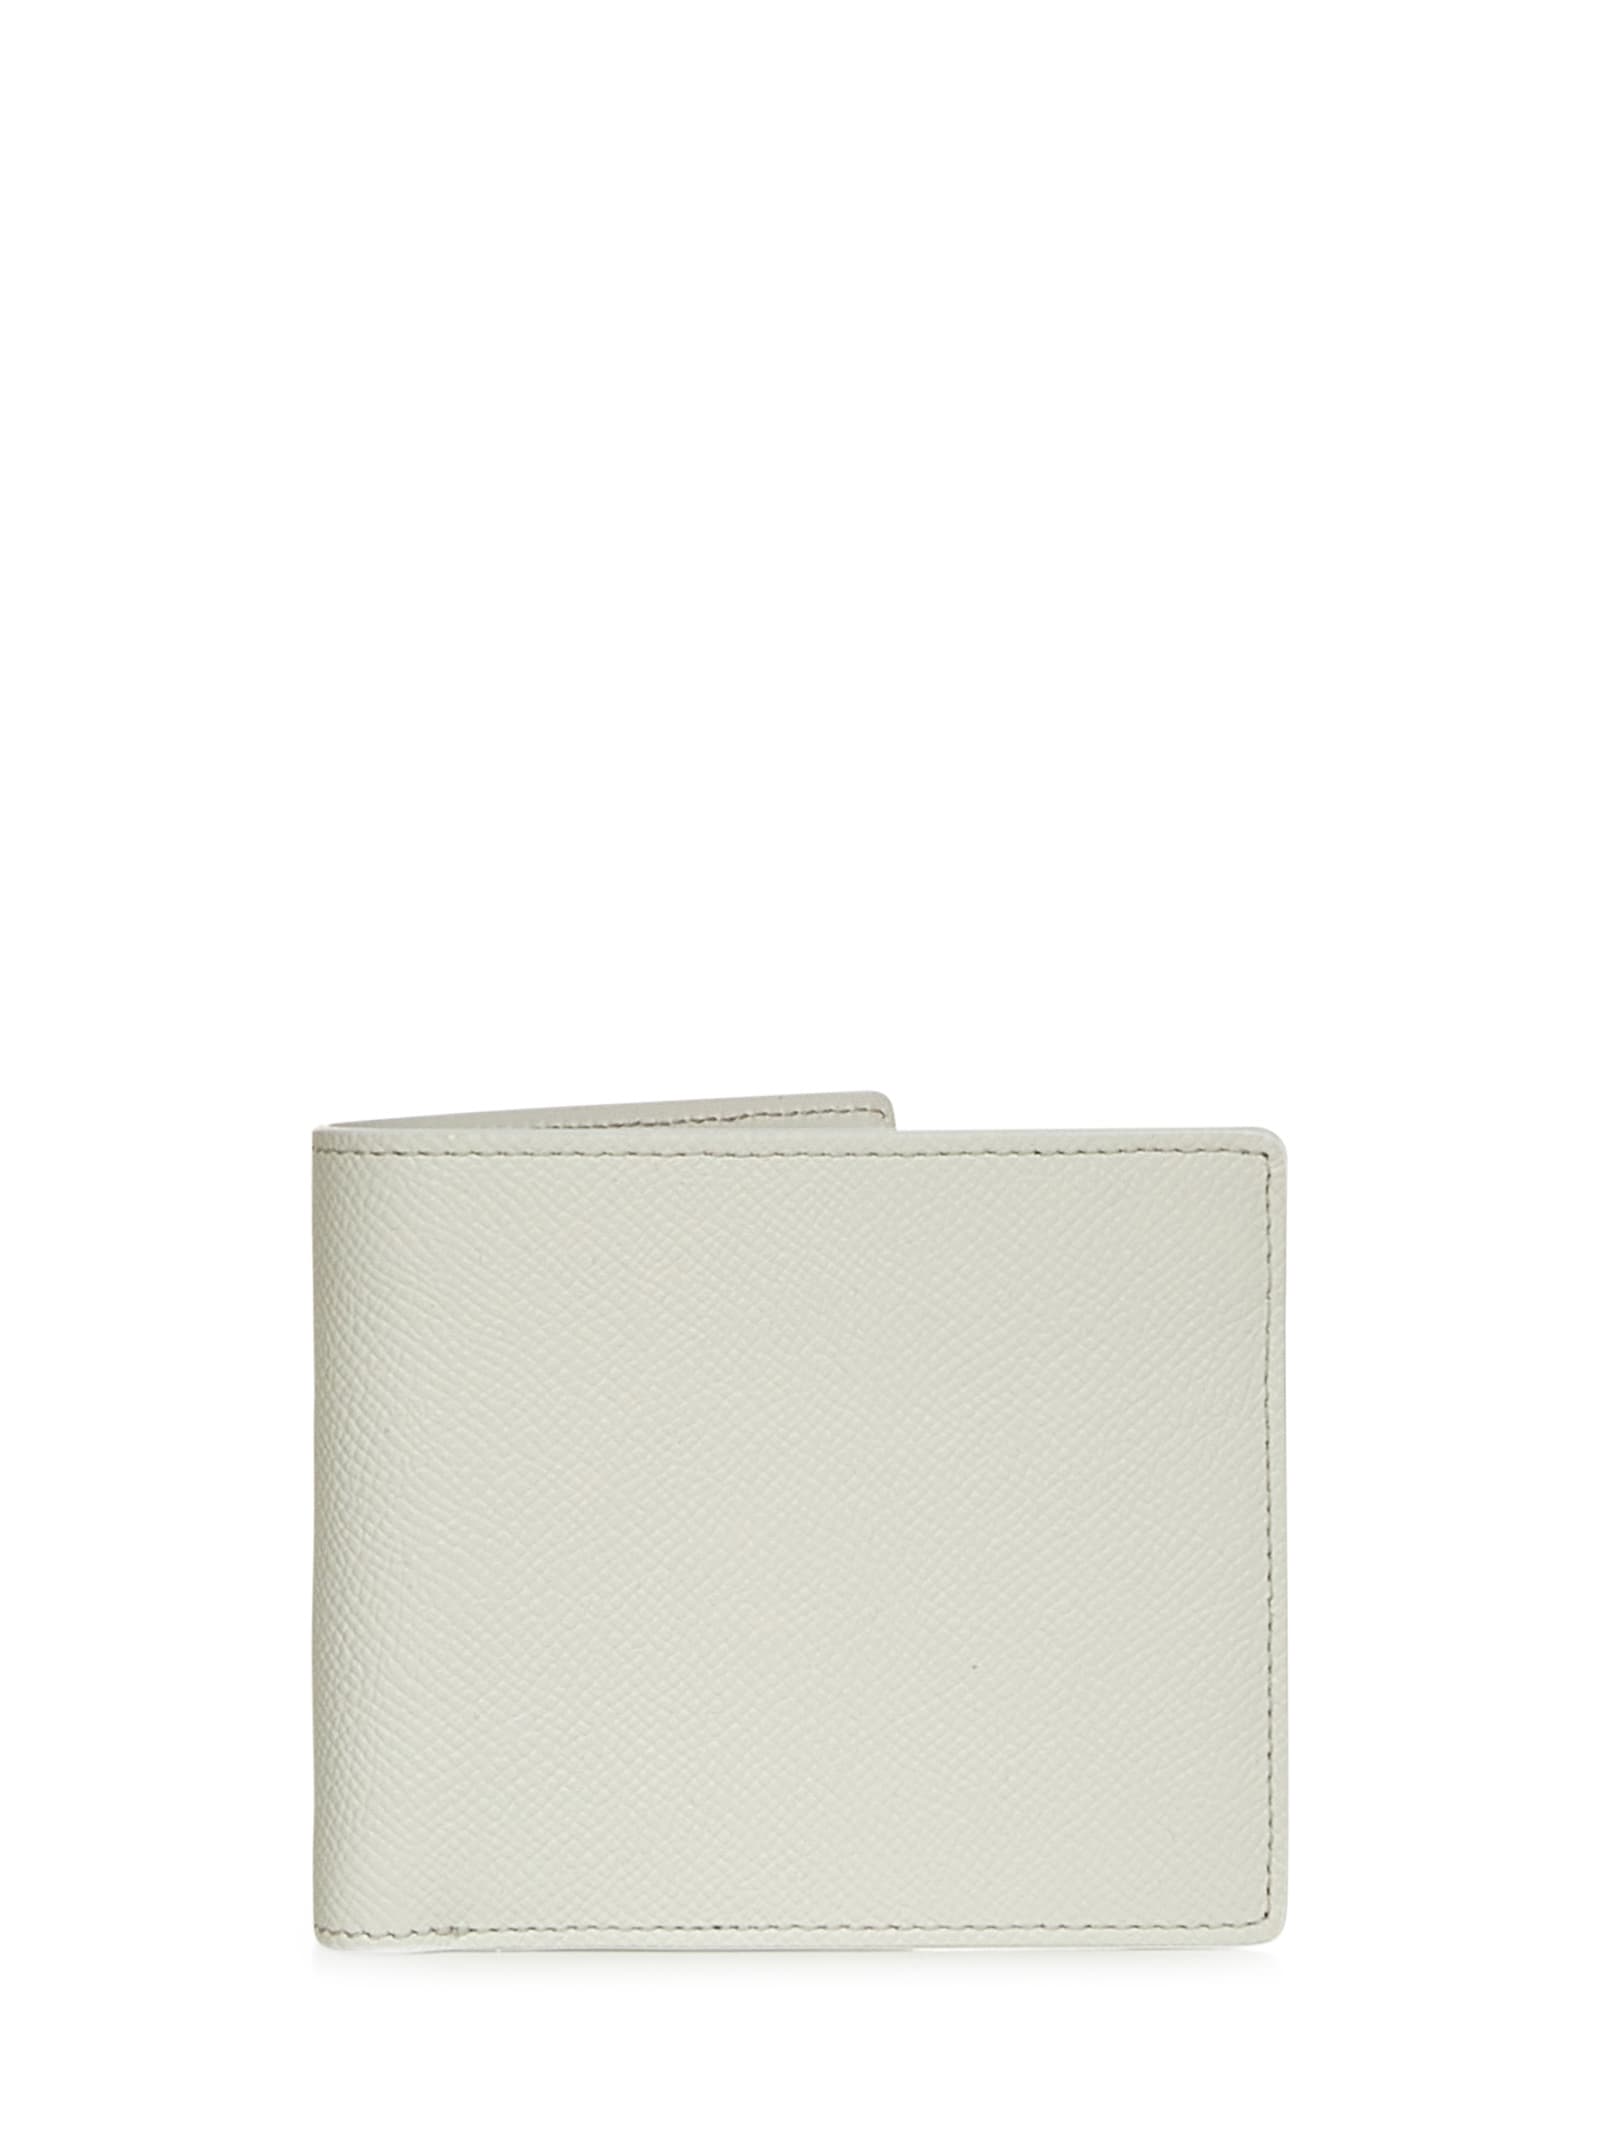 Maison Margiela Four Stitches Wallet In White | ModeSens